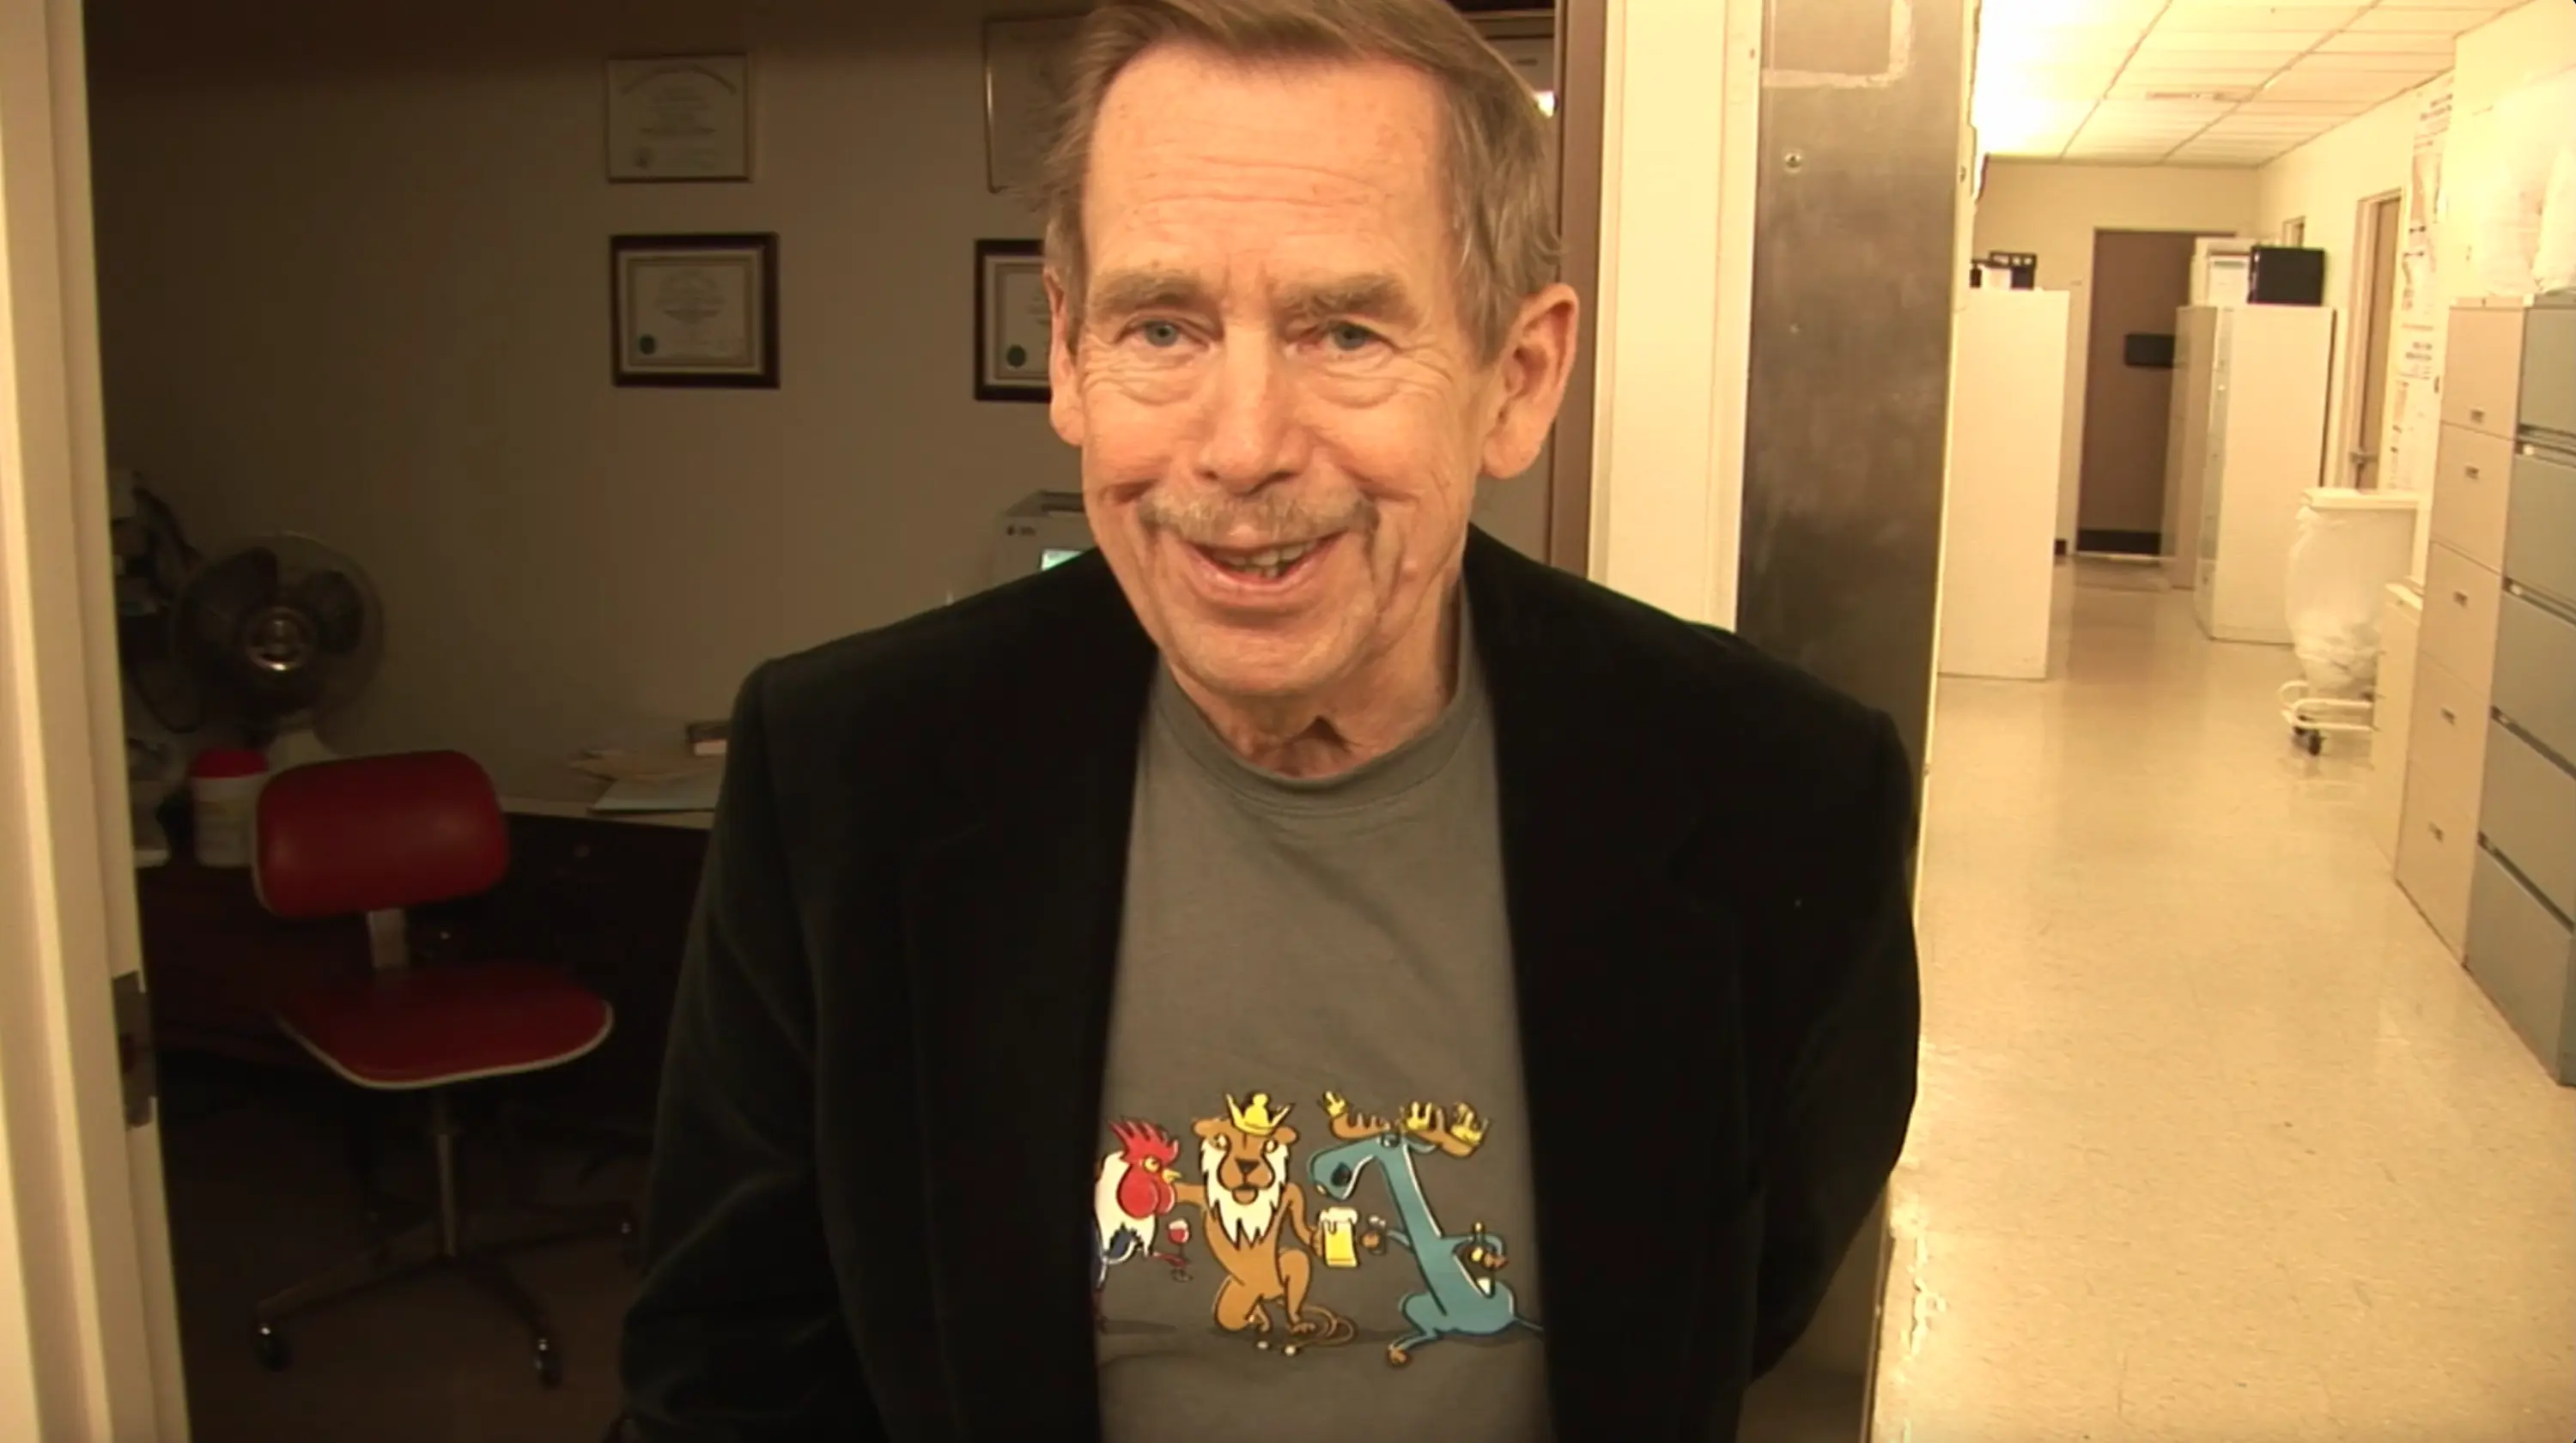 Recenze: Tady Havel, slyšíte mě? mapuje závěr prezidentova života s humorem, patosem i Odcházením